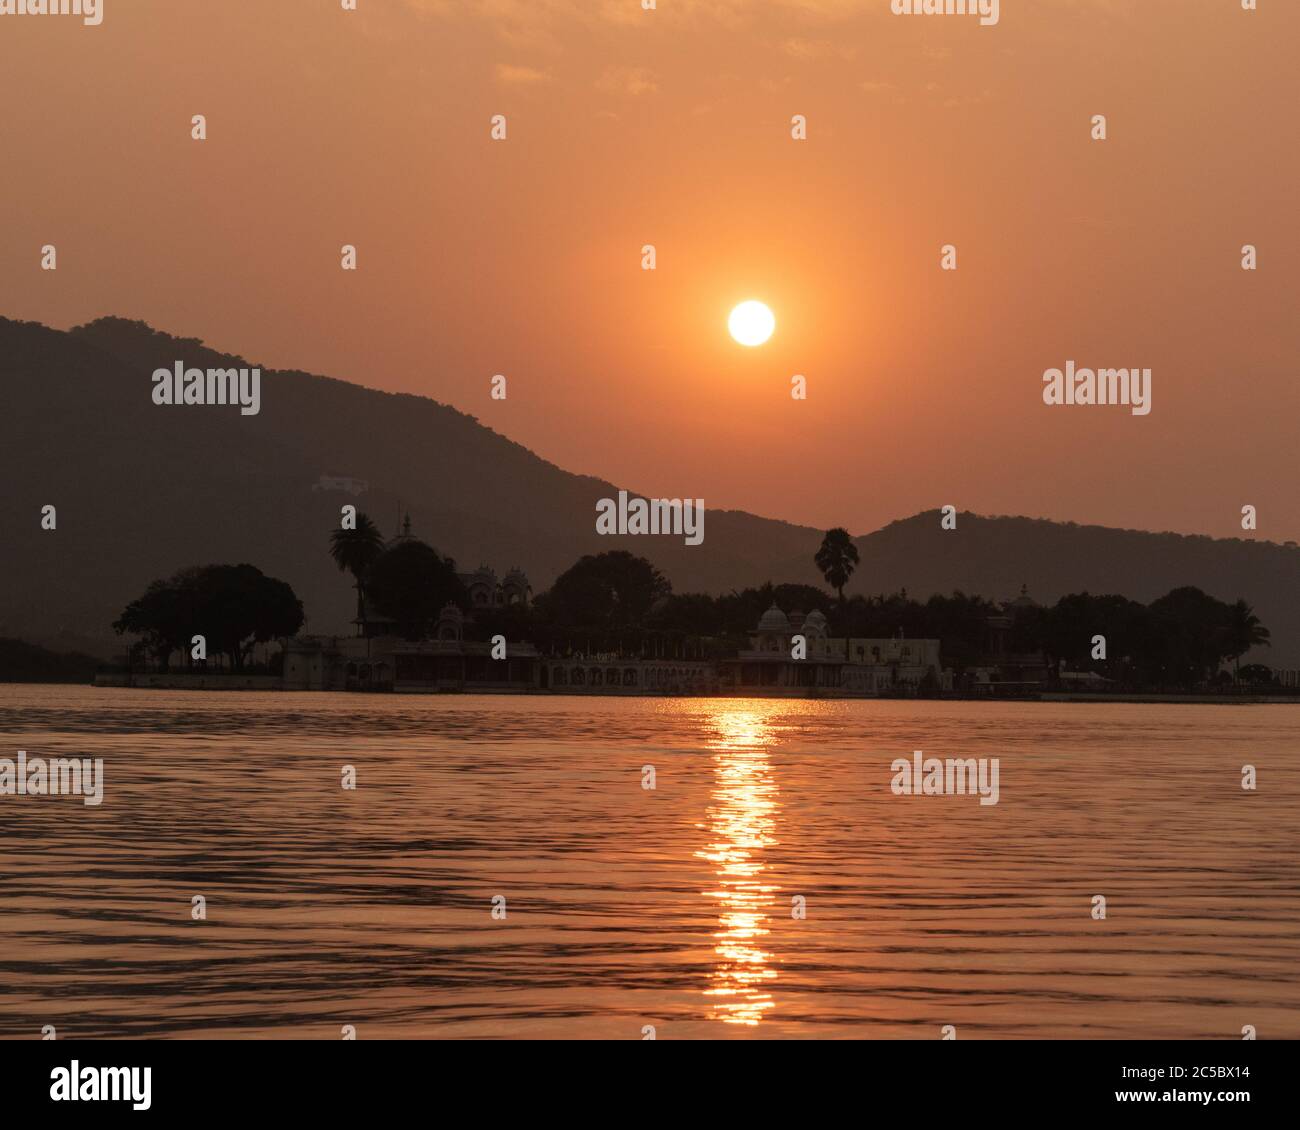 Coucher de soleil sur le lac Pichola. Photo de haute qualité Banque D'Images